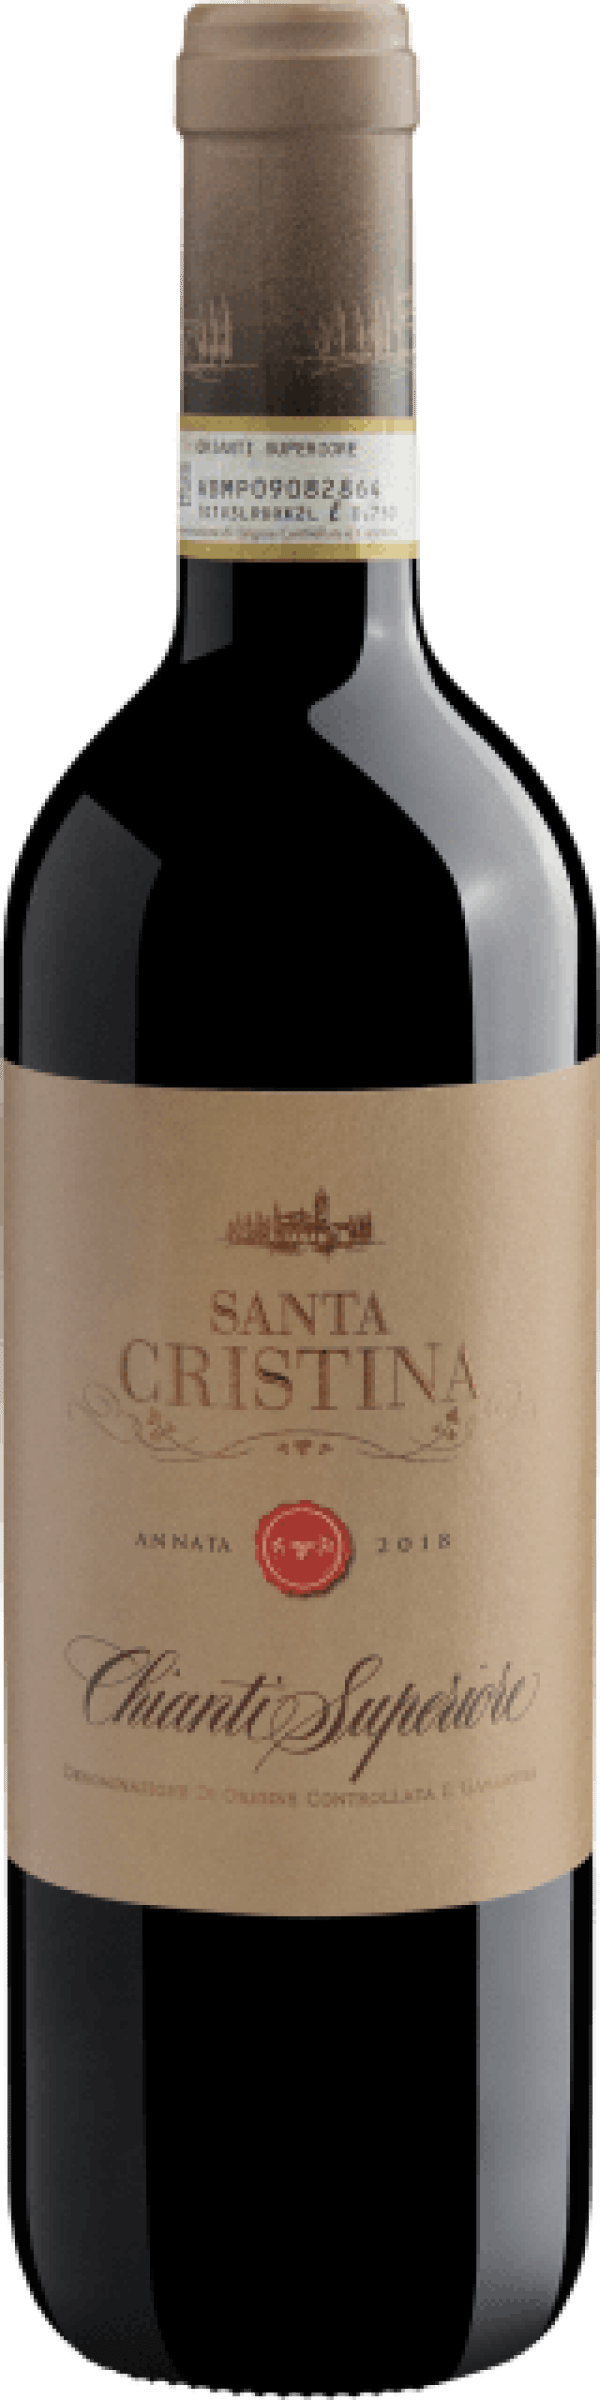 Santa Cristina Chianti Superiore DOCG 2018